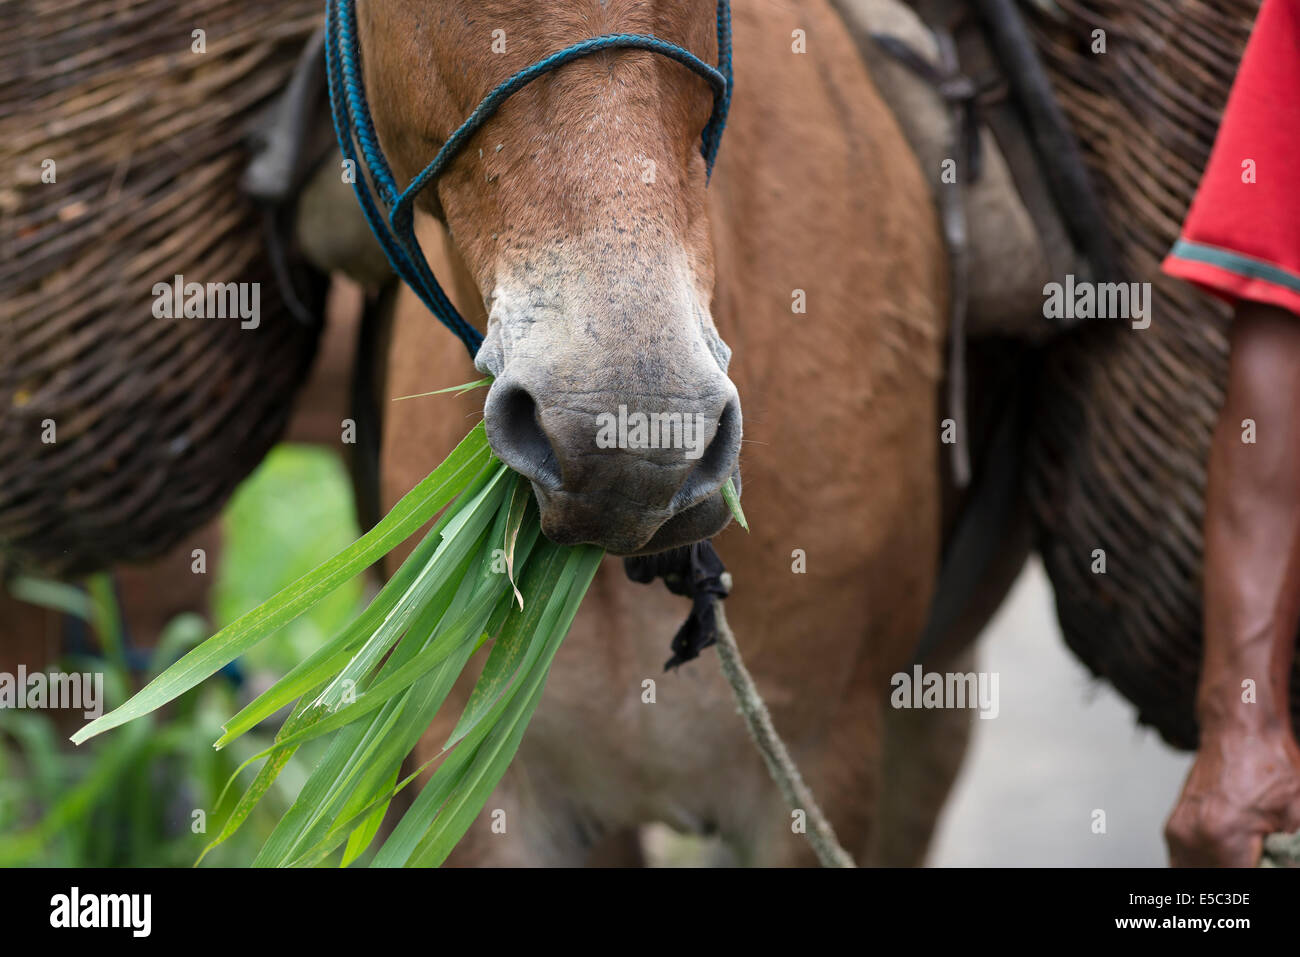 Détail d'un mulet museler au Brésil mangent de l'herbe Banque D'Images